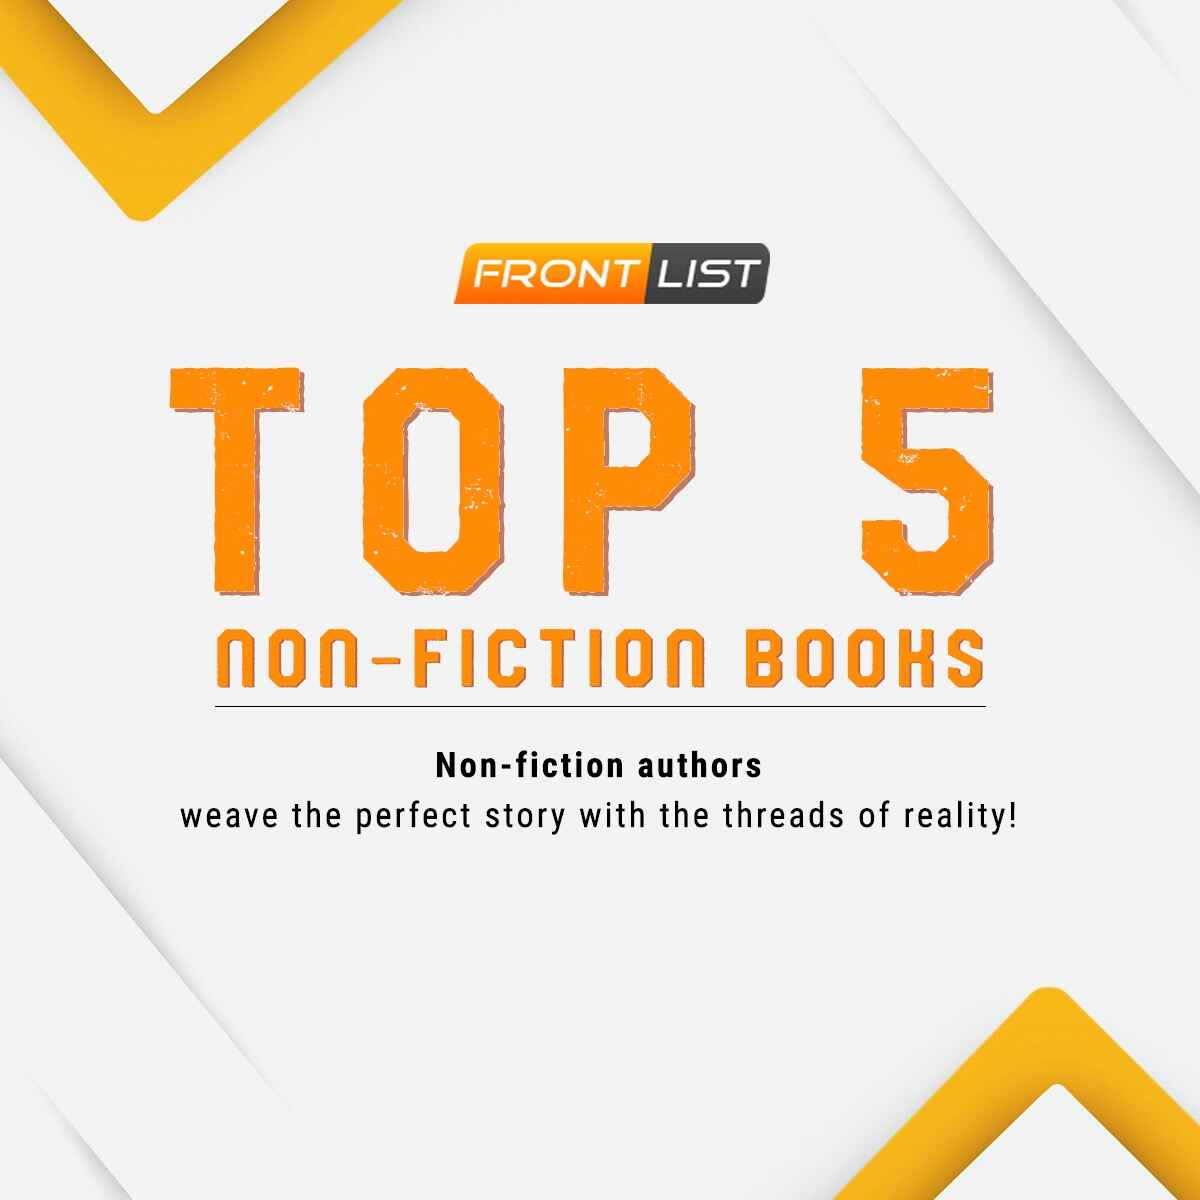 Non-Fiction Books